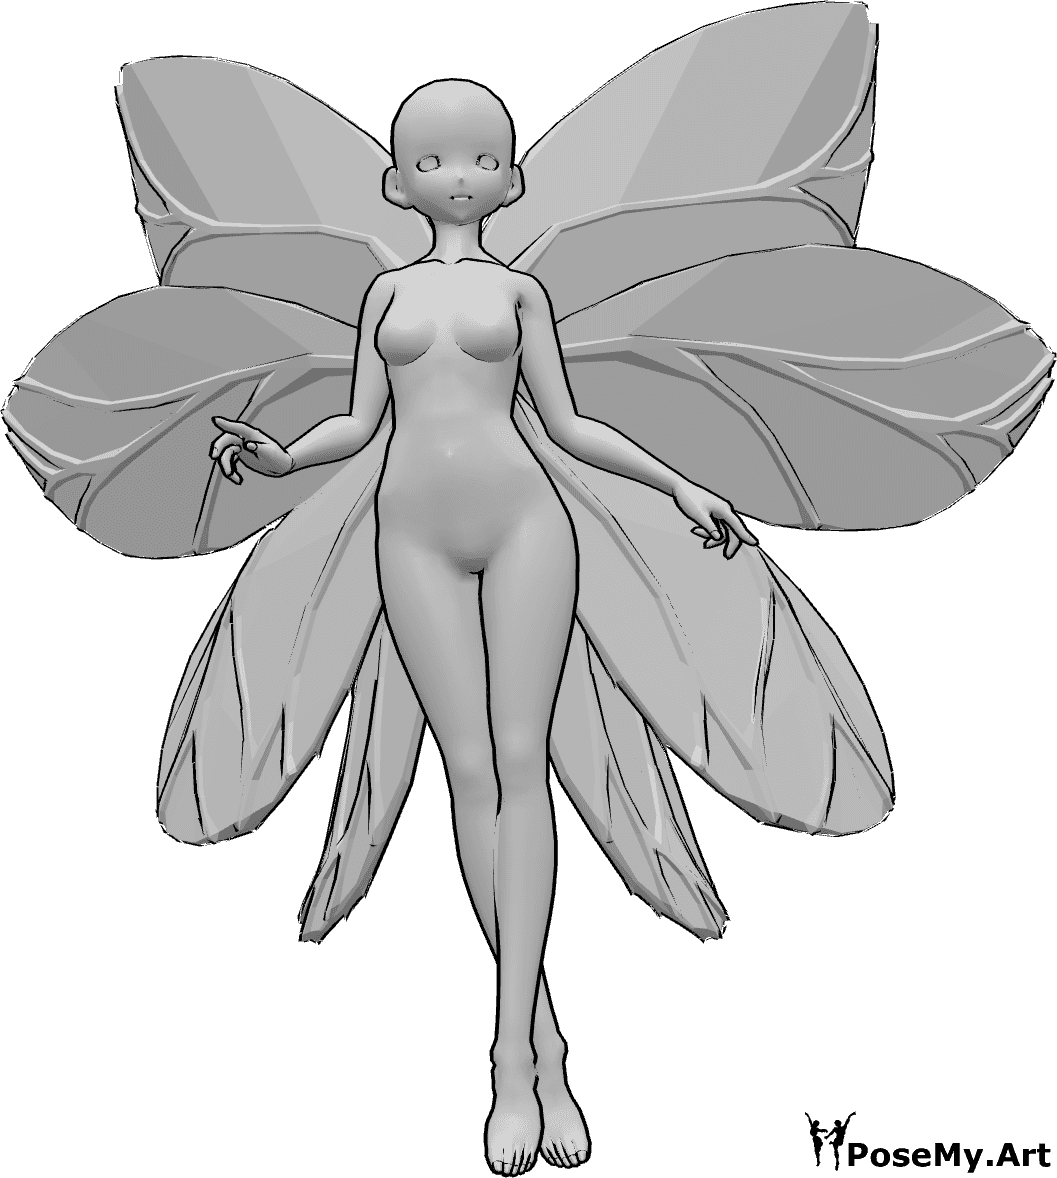 Referência de poses- Pose de fada de anime a voar - Anime feminino com asas de fada está a voar, olhando para a frente, com as pernas cruzadas